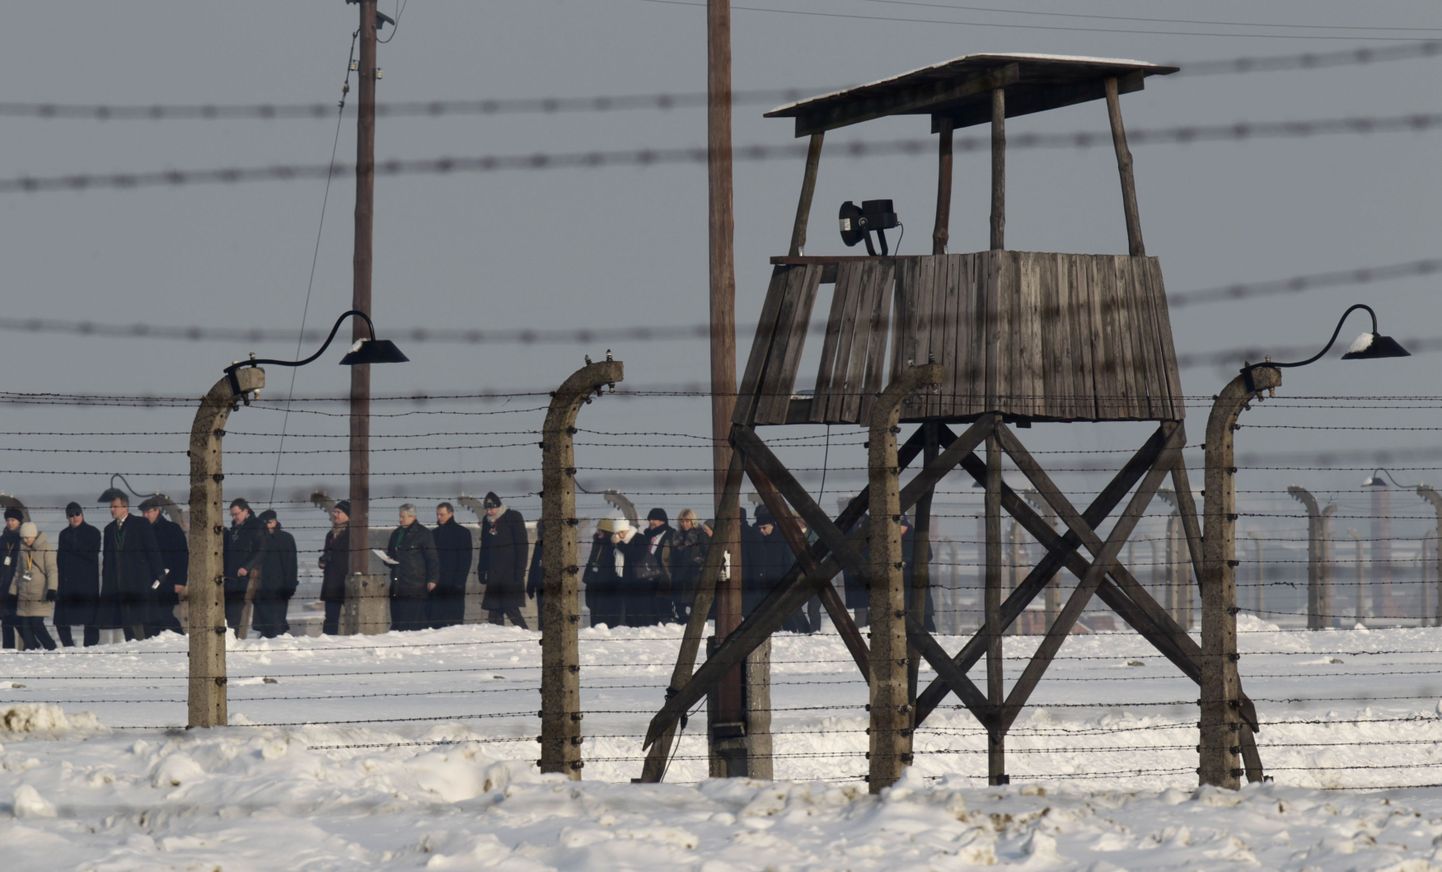 Посетители Освенцима в 65 годовщину его освобождения 27 января 2010 года.